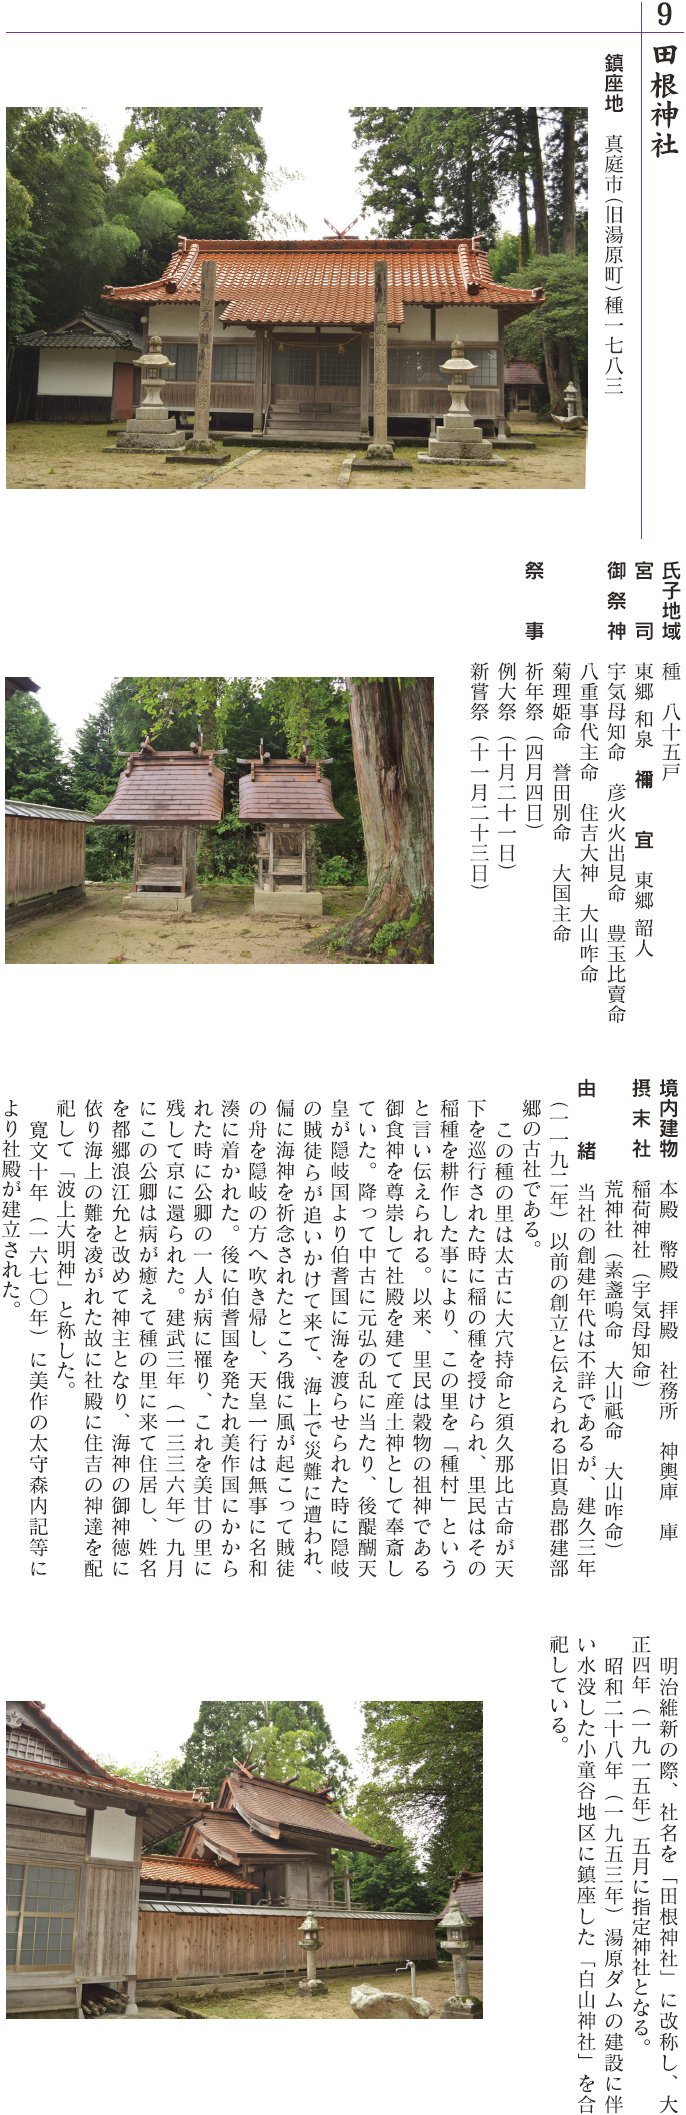 9 田根神社